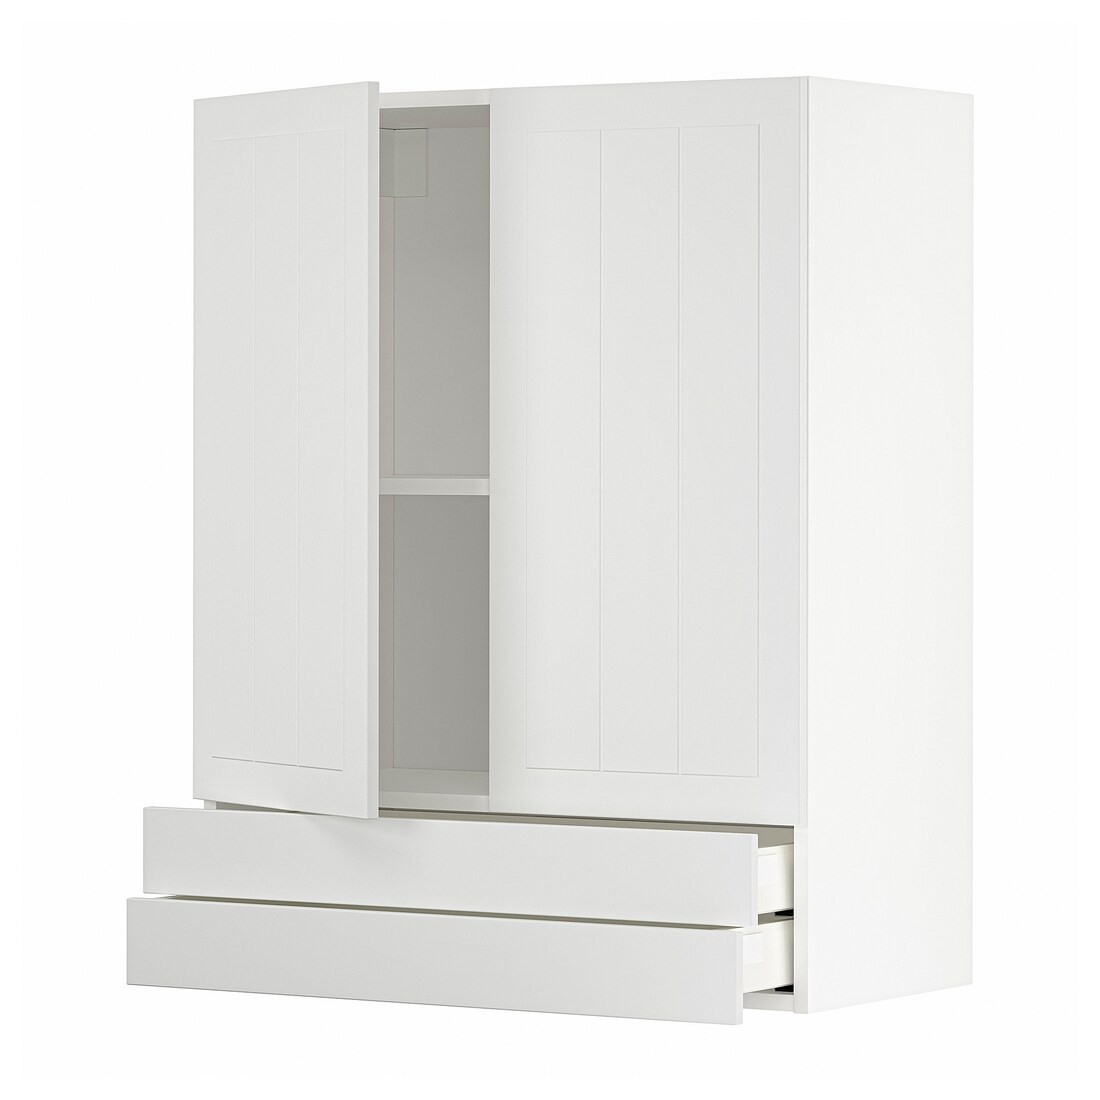 IKEA METOD МЕТОД / MAXIMERA МАКСИМЕРА Навесной шкаф / 2 дверцы / 2 ящика, белый / Stensund белый, 80x100 см 19456797 194.567.97